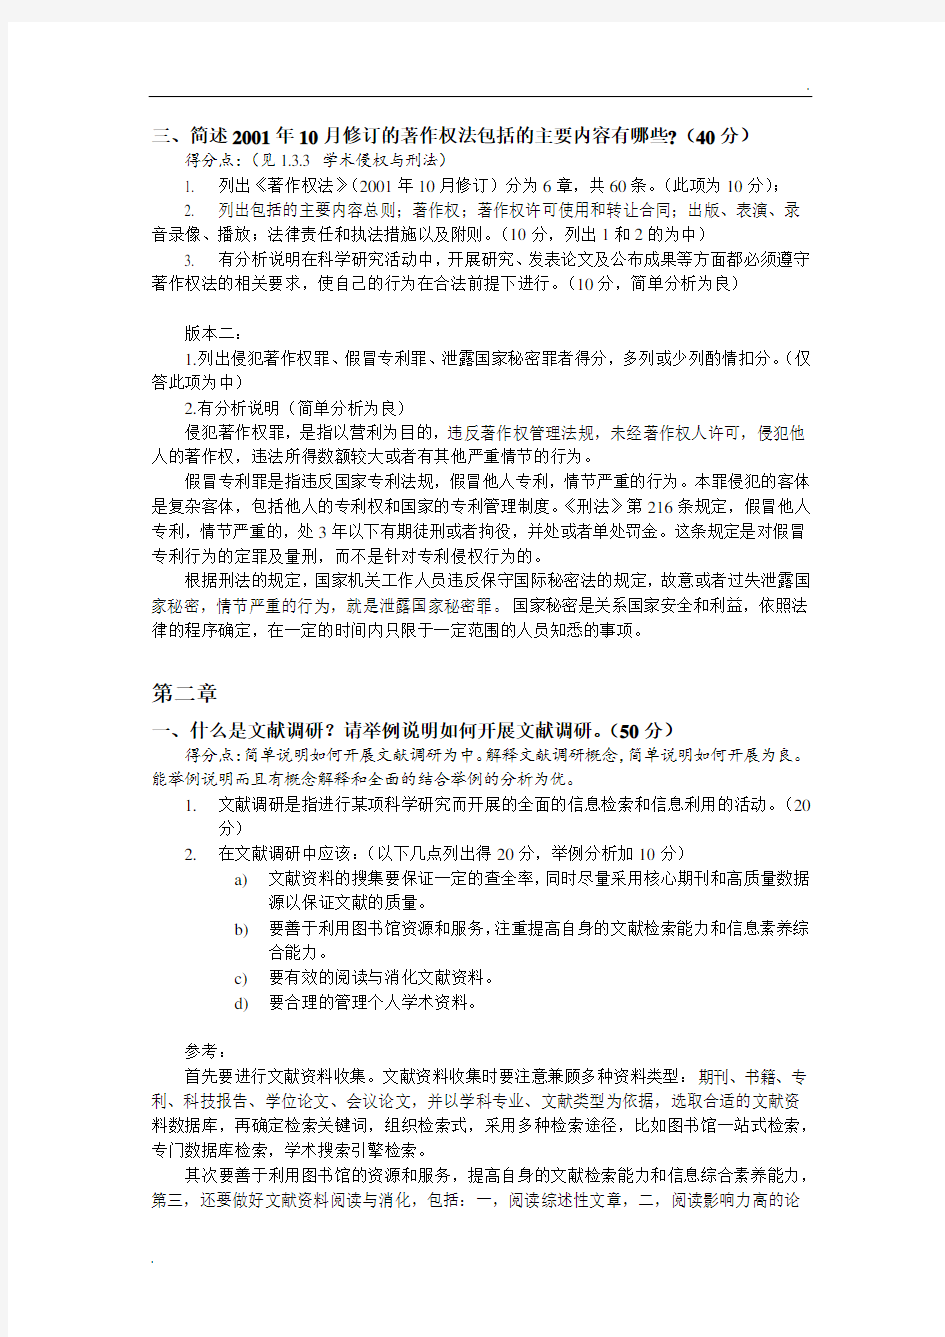 武汉大学《学术道德与学术规范》作业答案(整合版)